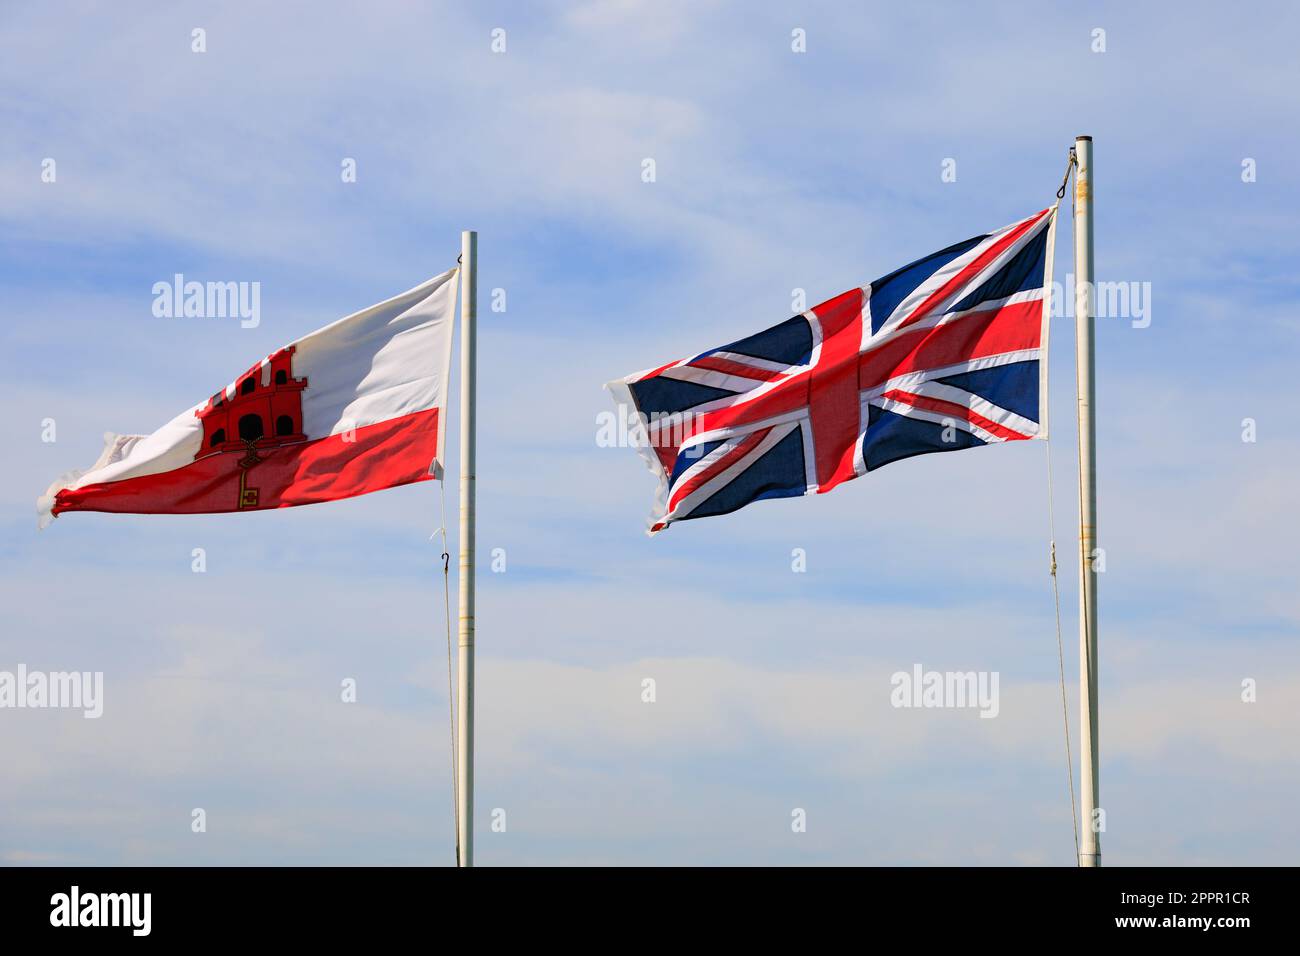 Bandiera di Gibilterra e Union Jack che volano fianco a fianco. Il territorio britannico d'oltremare di Gibilterra, la roccia di Gibilterra sulla penisola iberica. Foto Stock